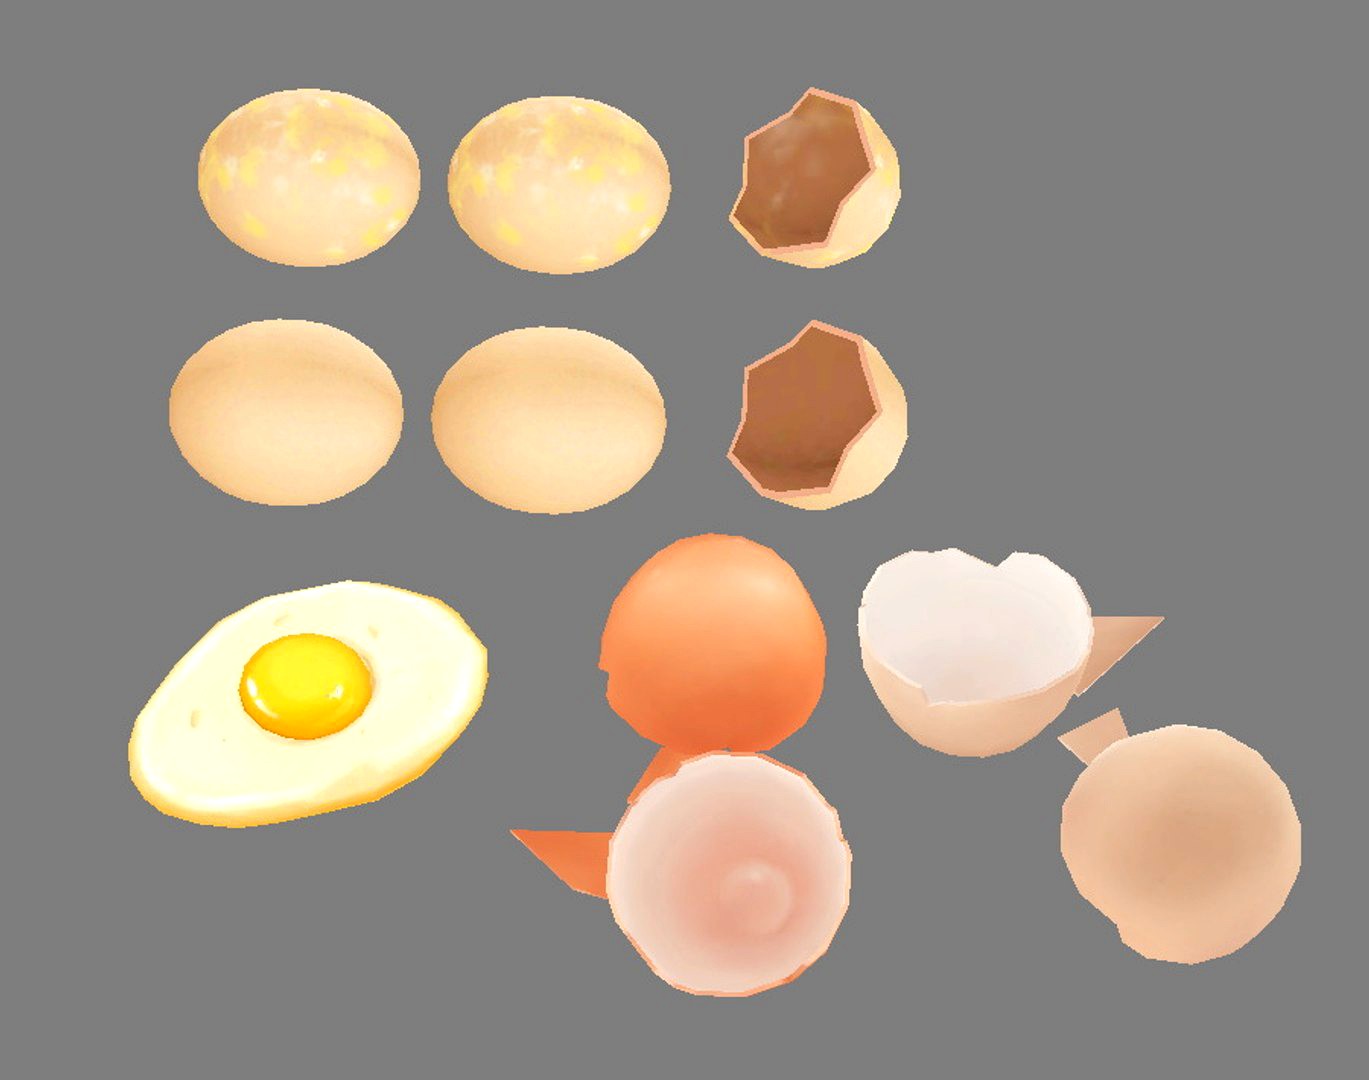 A pile of eggs - fried egg - yolk - eggshells - broken eggs